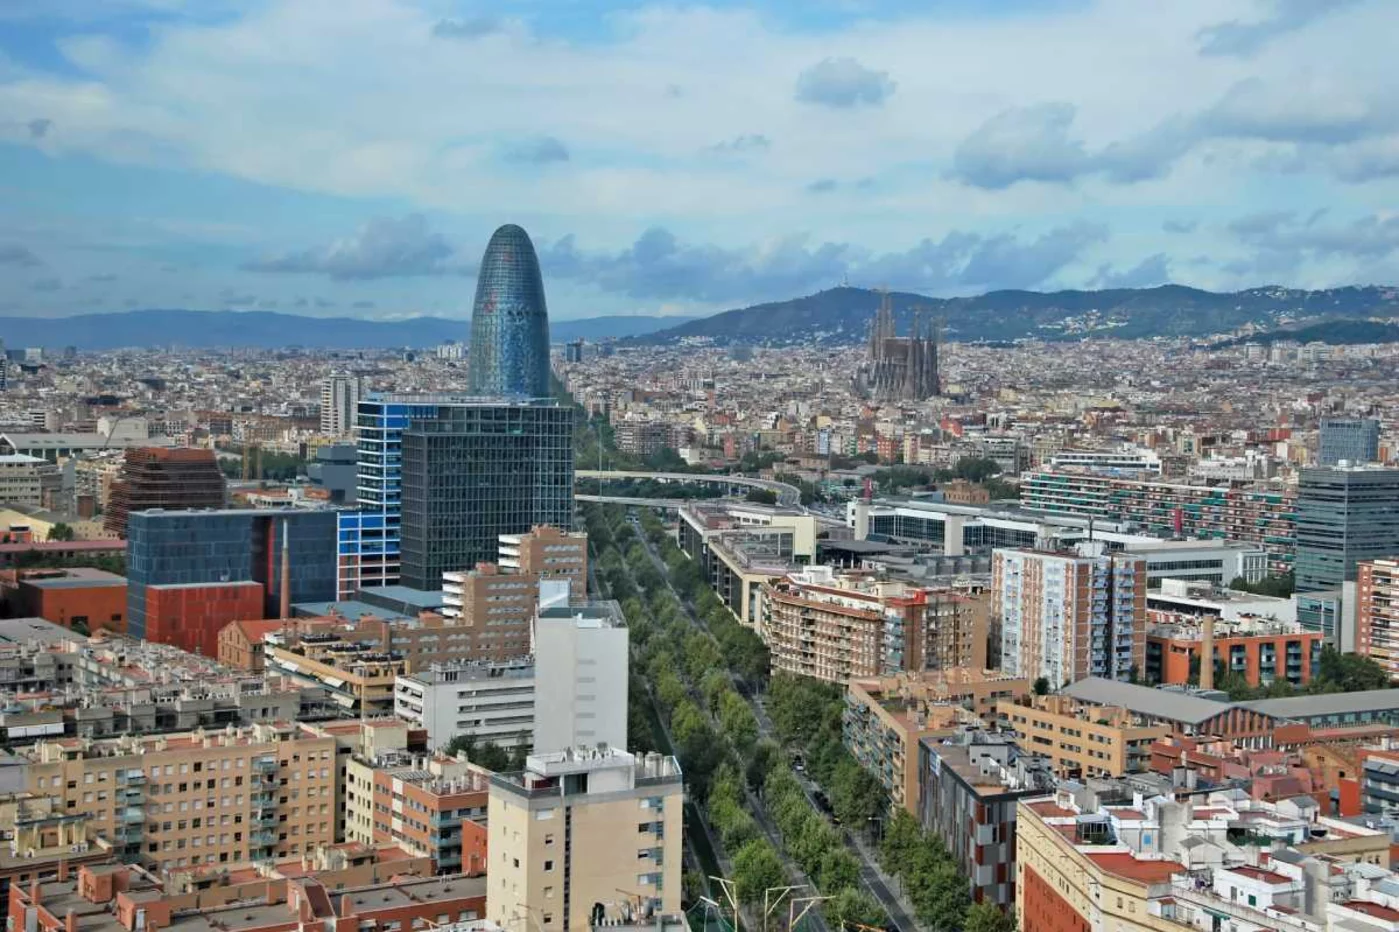 Barcelona acumula masa crítica en salud pública, recuerdan los expertos a Gobierno y Generalitat.